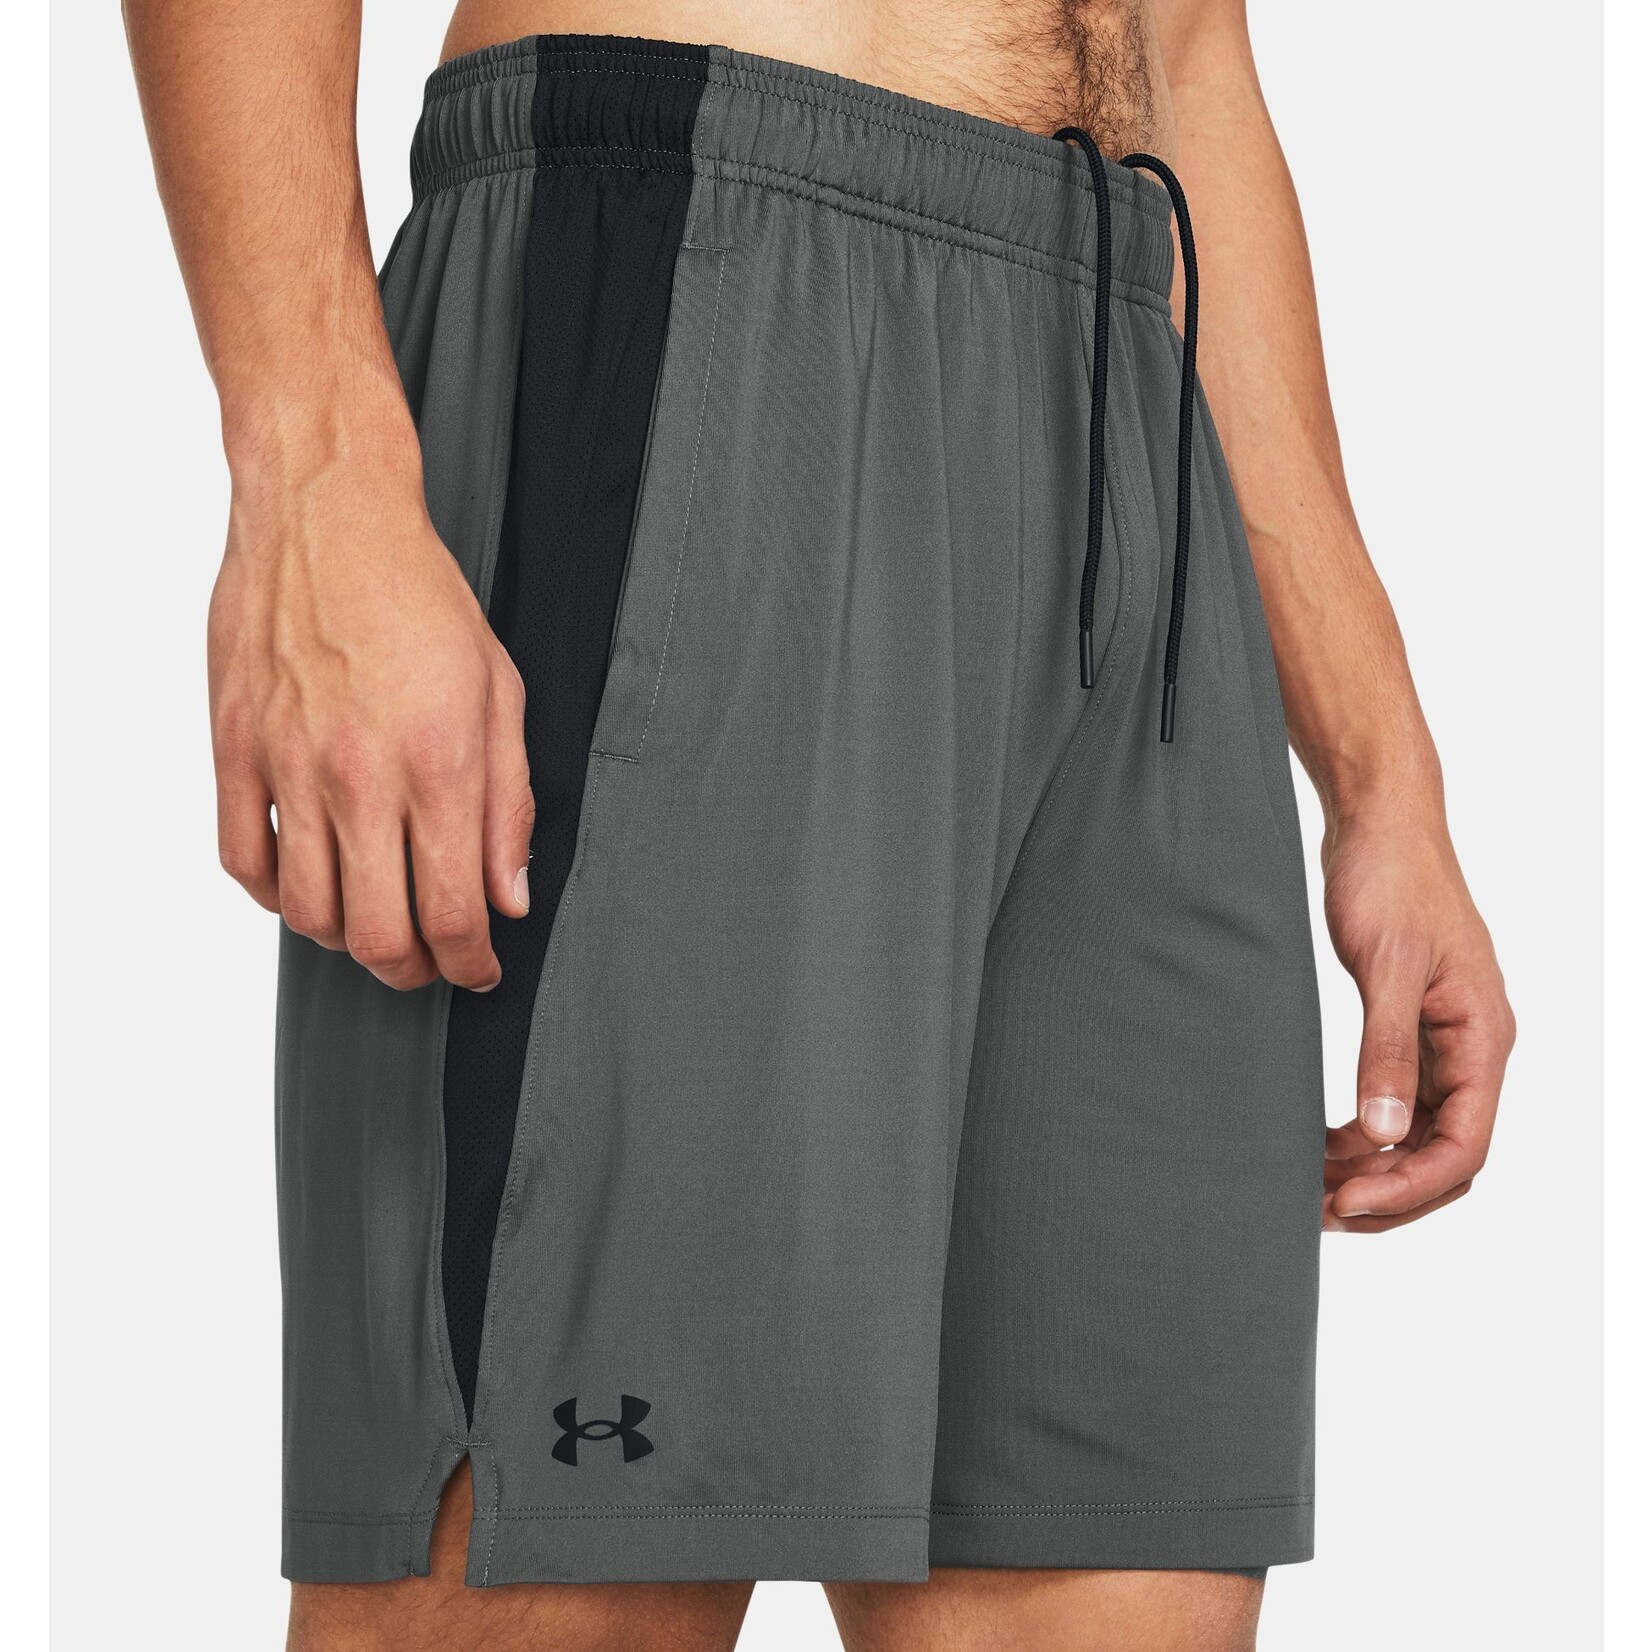 UNDER ARMOUR Men's UA Tech Vent Shorts